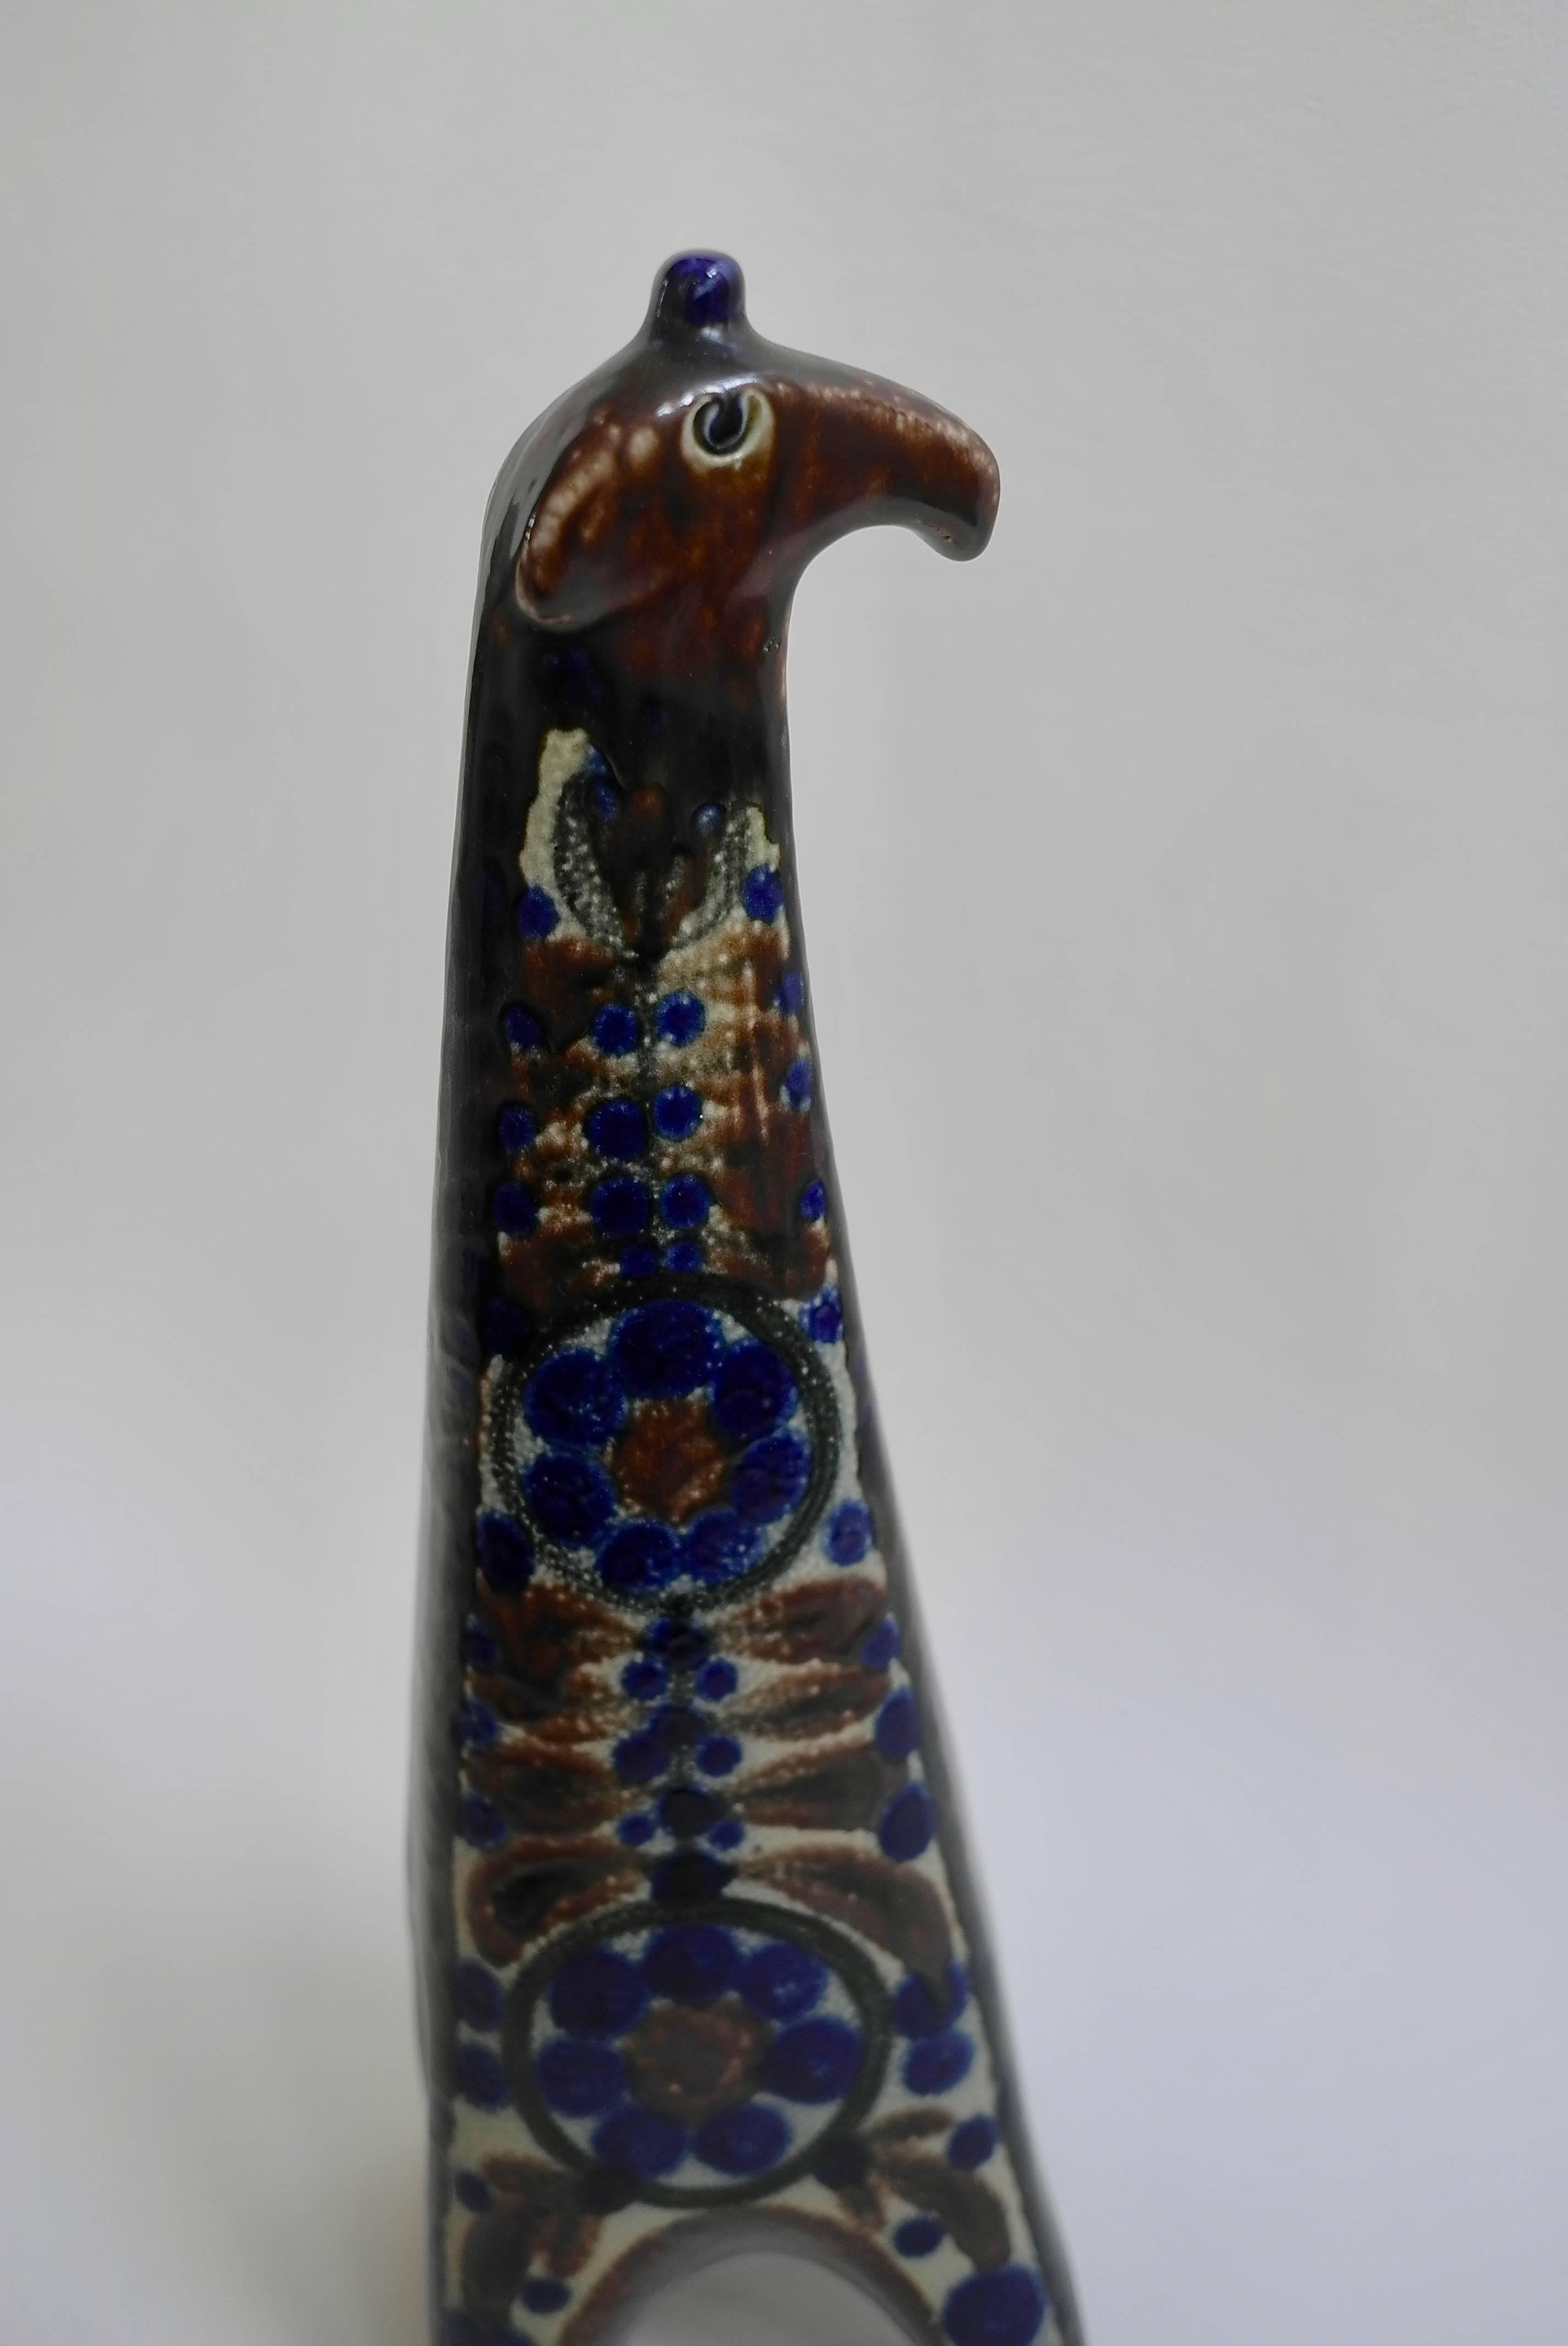 Grande girafe danoise en céramique, années 1960. Dans de magnifiques tons bleus et bruns.